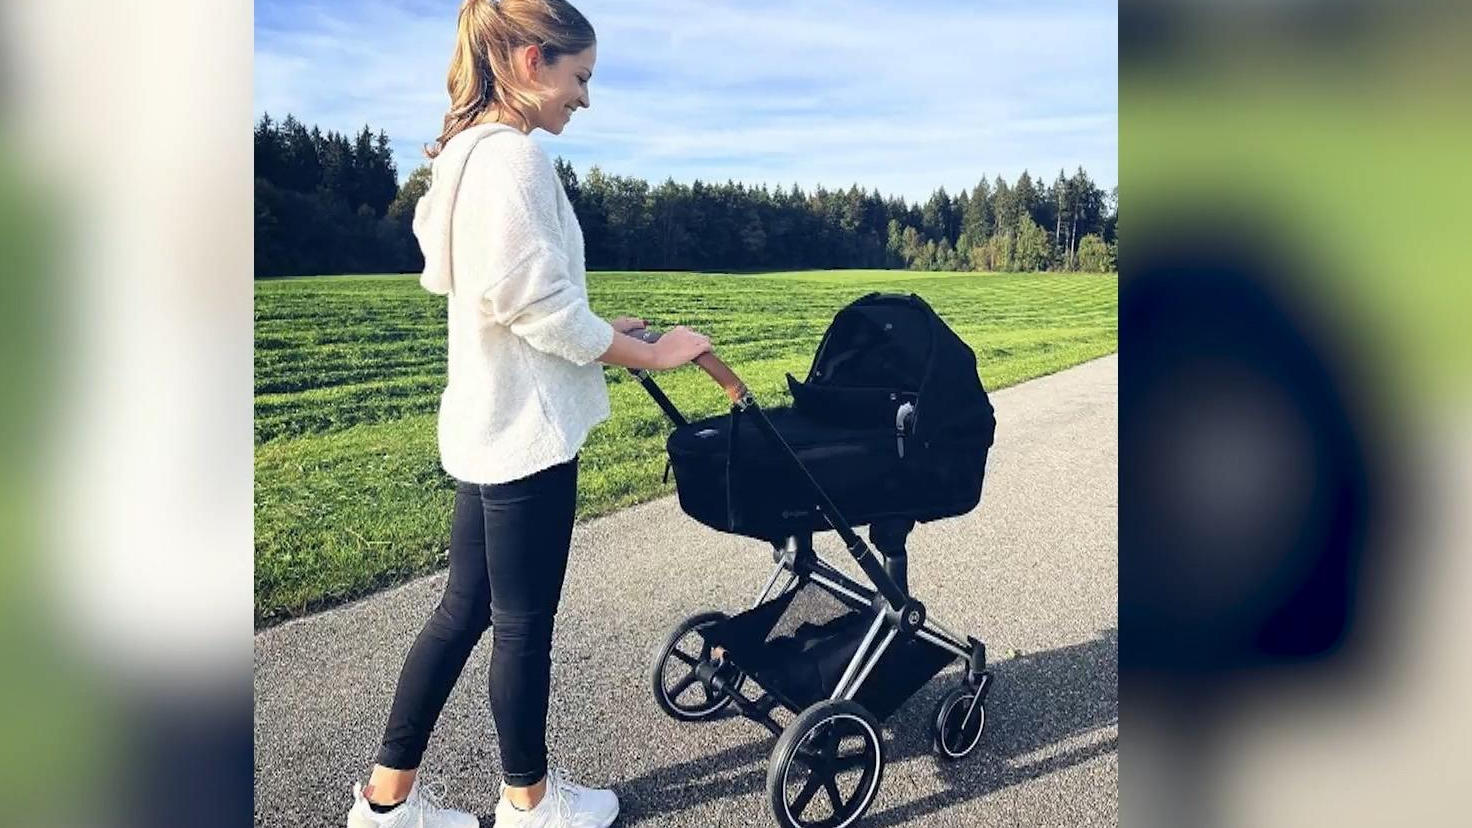 Fußballerin Melanie Leupolz ist im Baby-Glück "Anstrengend, aber wunderschön"